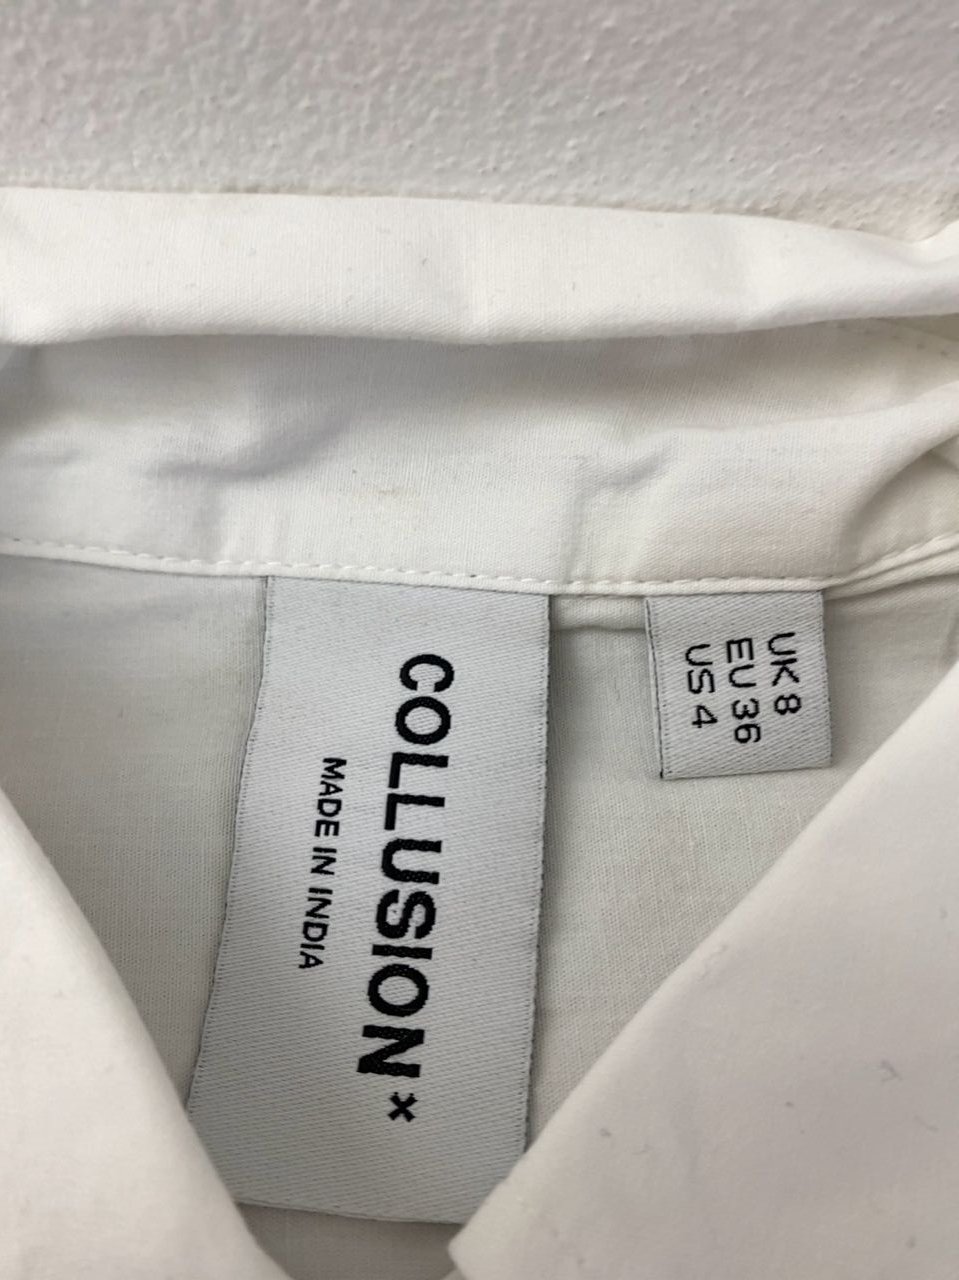 Dámská košile bílé barvy s 3/4 rukávem Collusion vel. 36